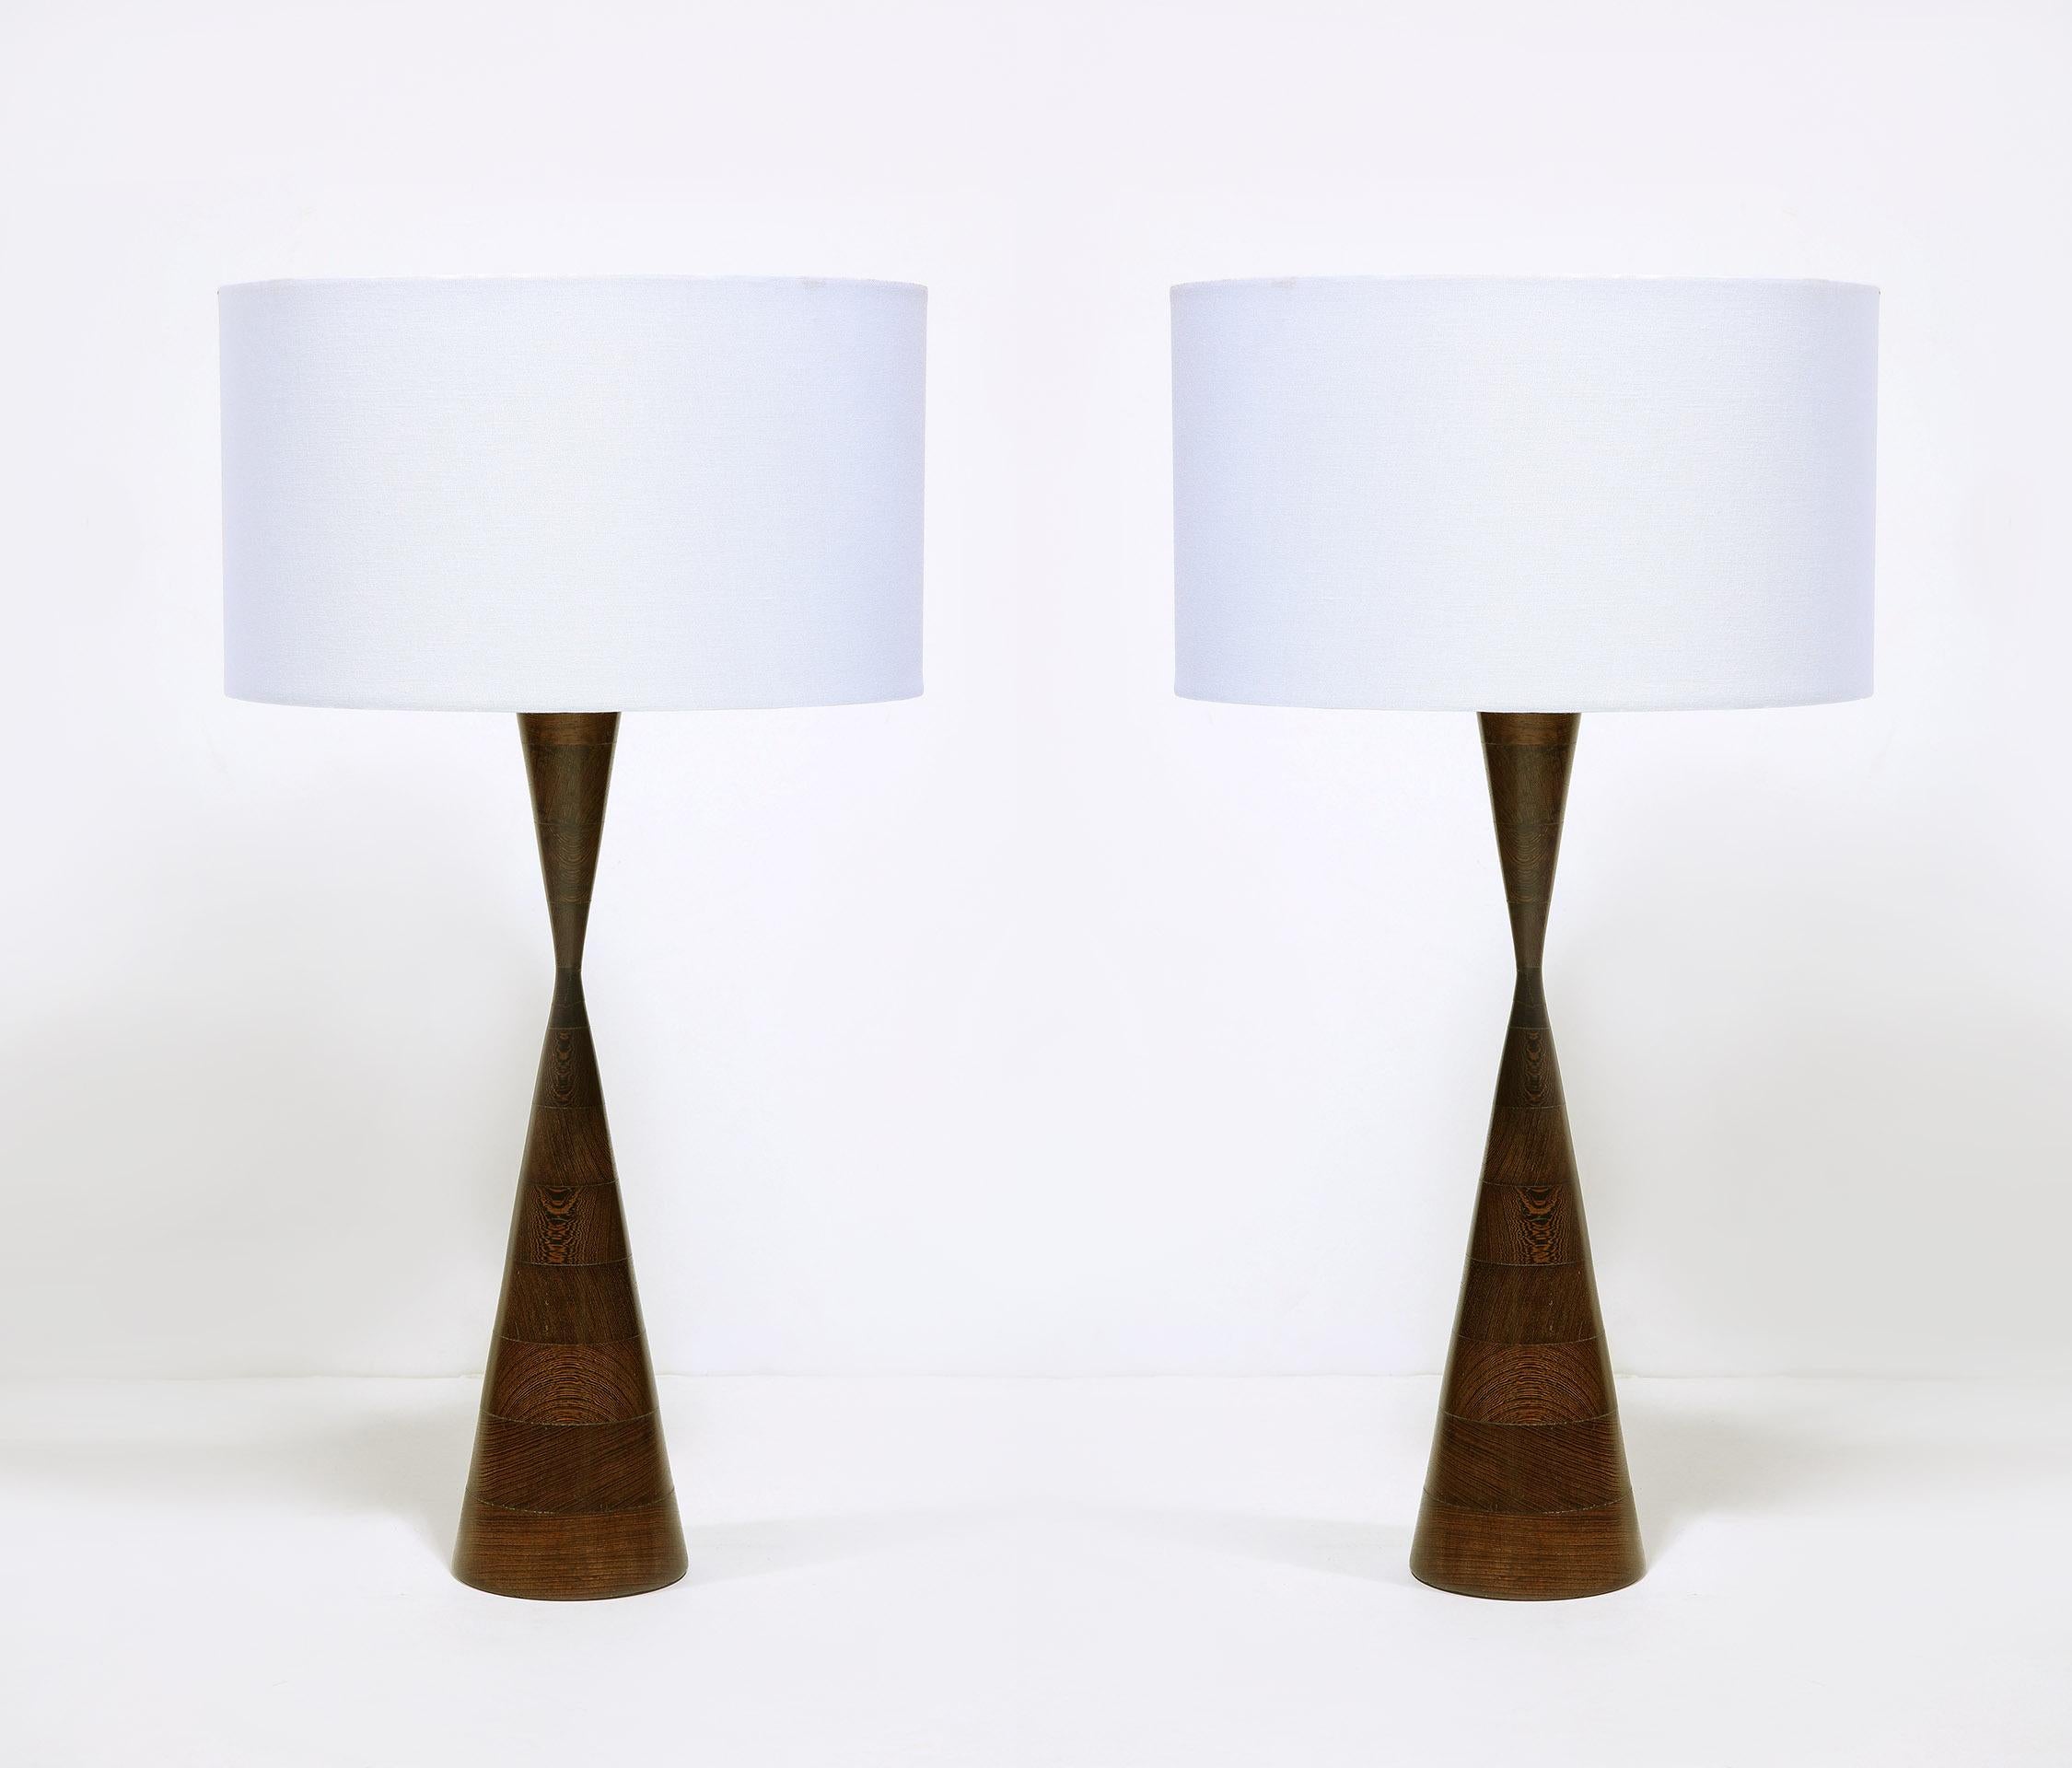 Les lampes en bois de wengé empilées et tournées au design inhabituel. 
Dans le style de Phillip Lloyds Powell.